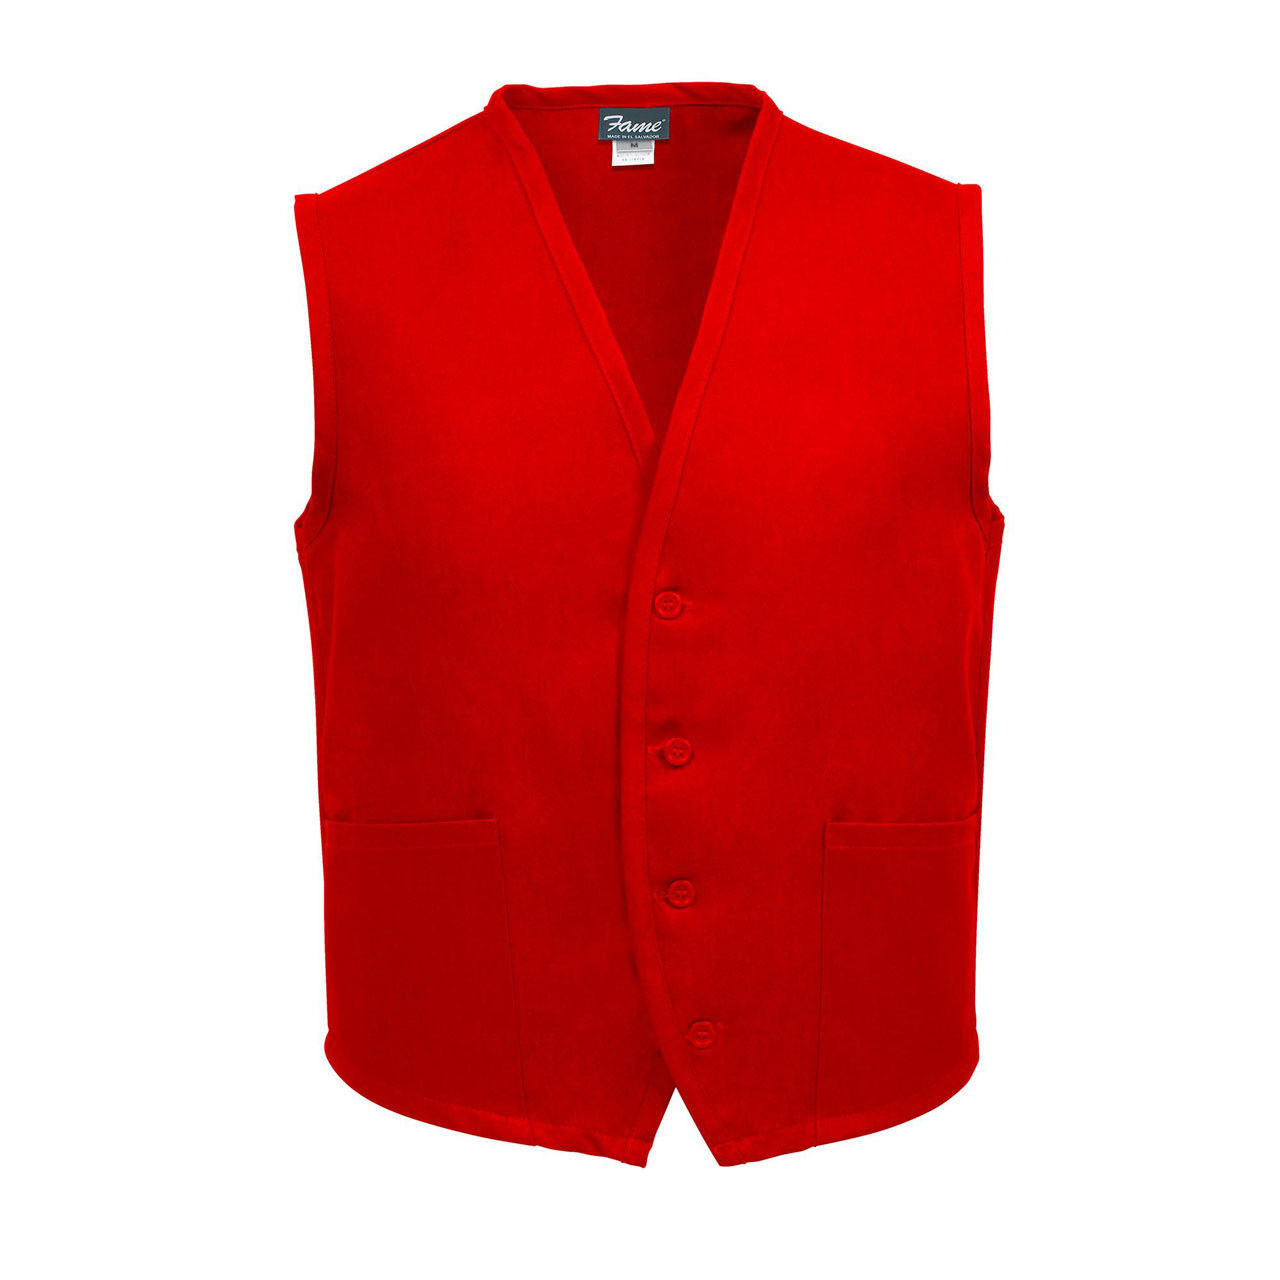 Unisex Uniform Vest, 2 Pocket, Red Questions & Answers